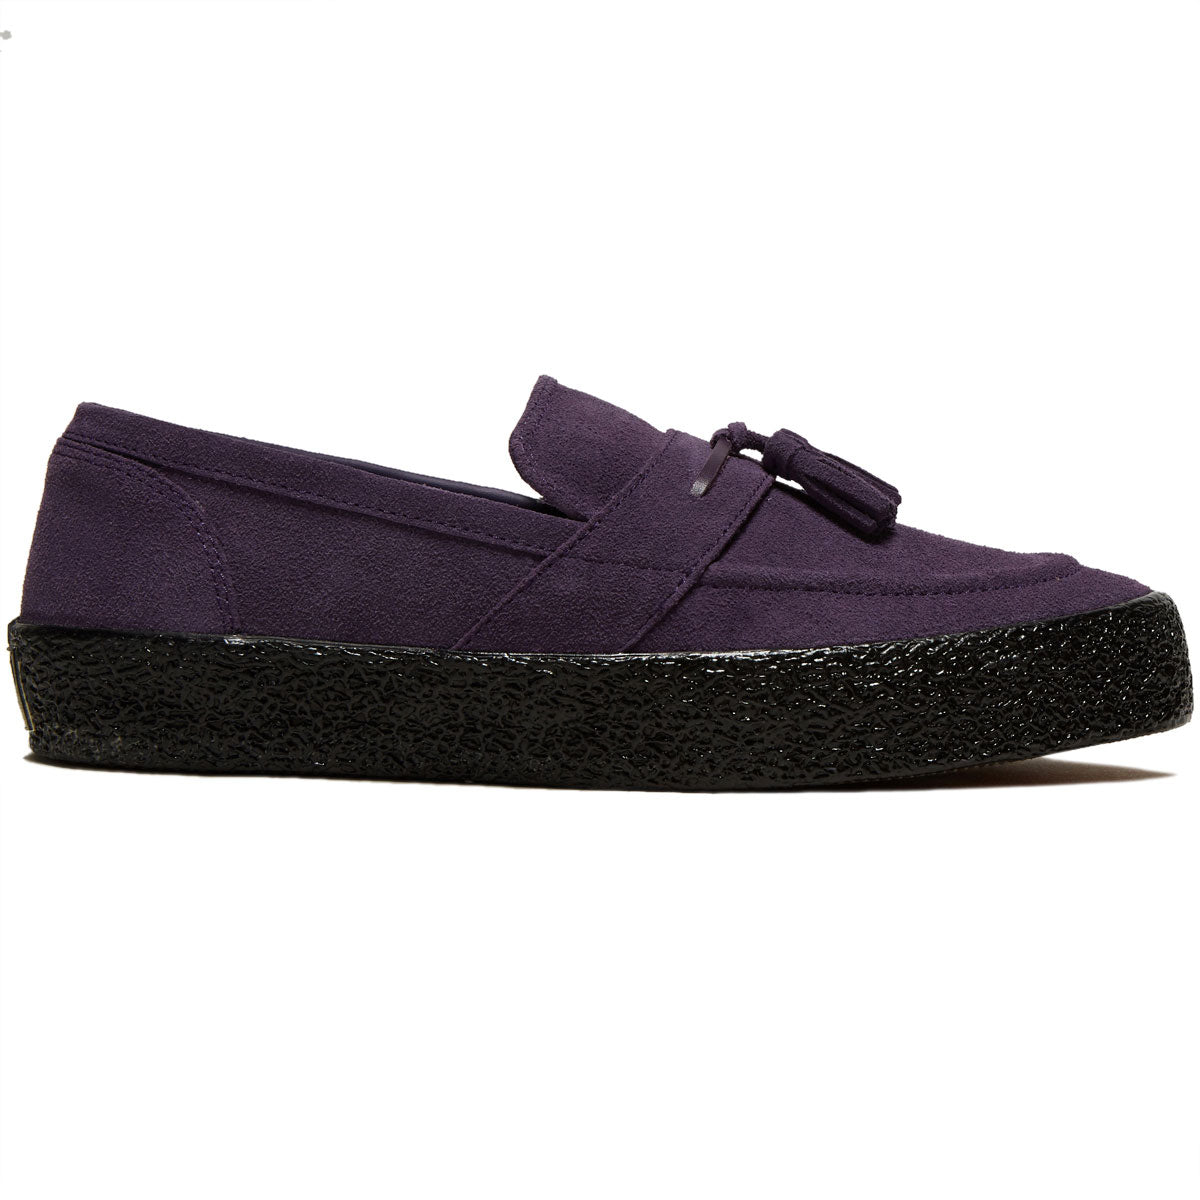 Last Resort AB VM005 Loafer Shoes - Loganberry/Black image 1